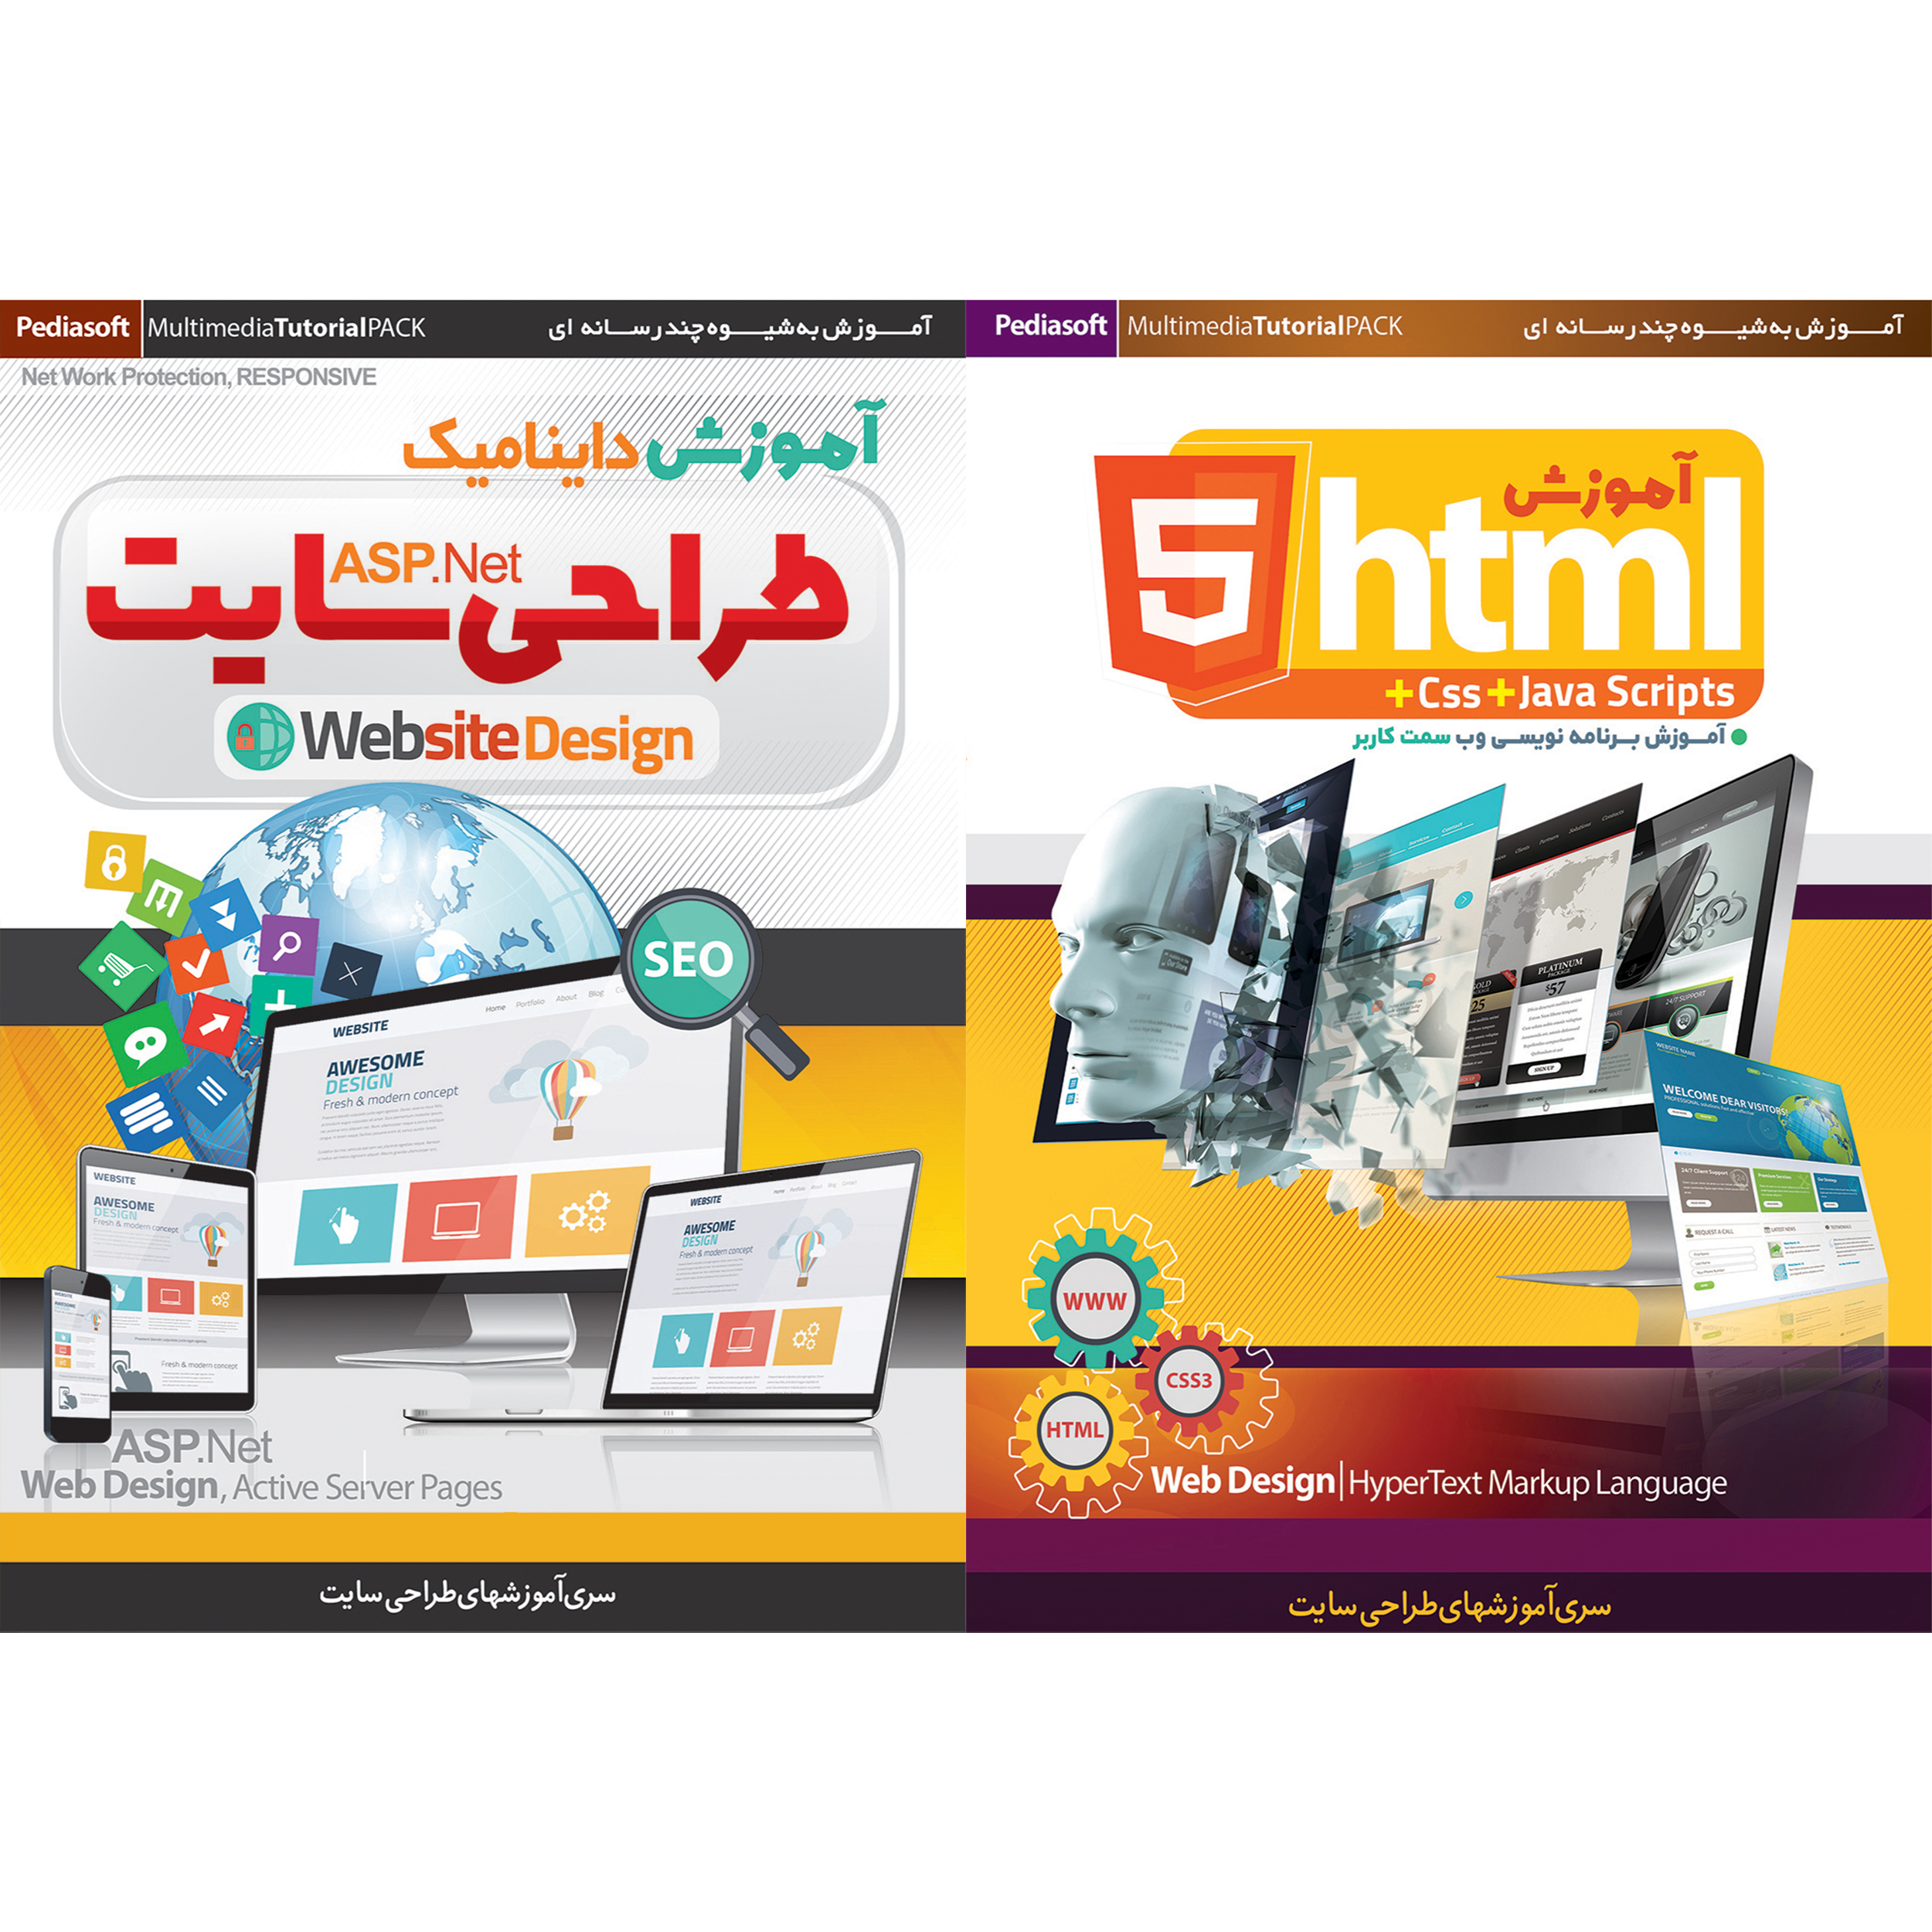 نرم افزار آموزش HTML 5 نشر پدیا سافت به همراه نرم افزار آموزش داینامیک طراحی سایت ASP.Net نشر پدیا سافت